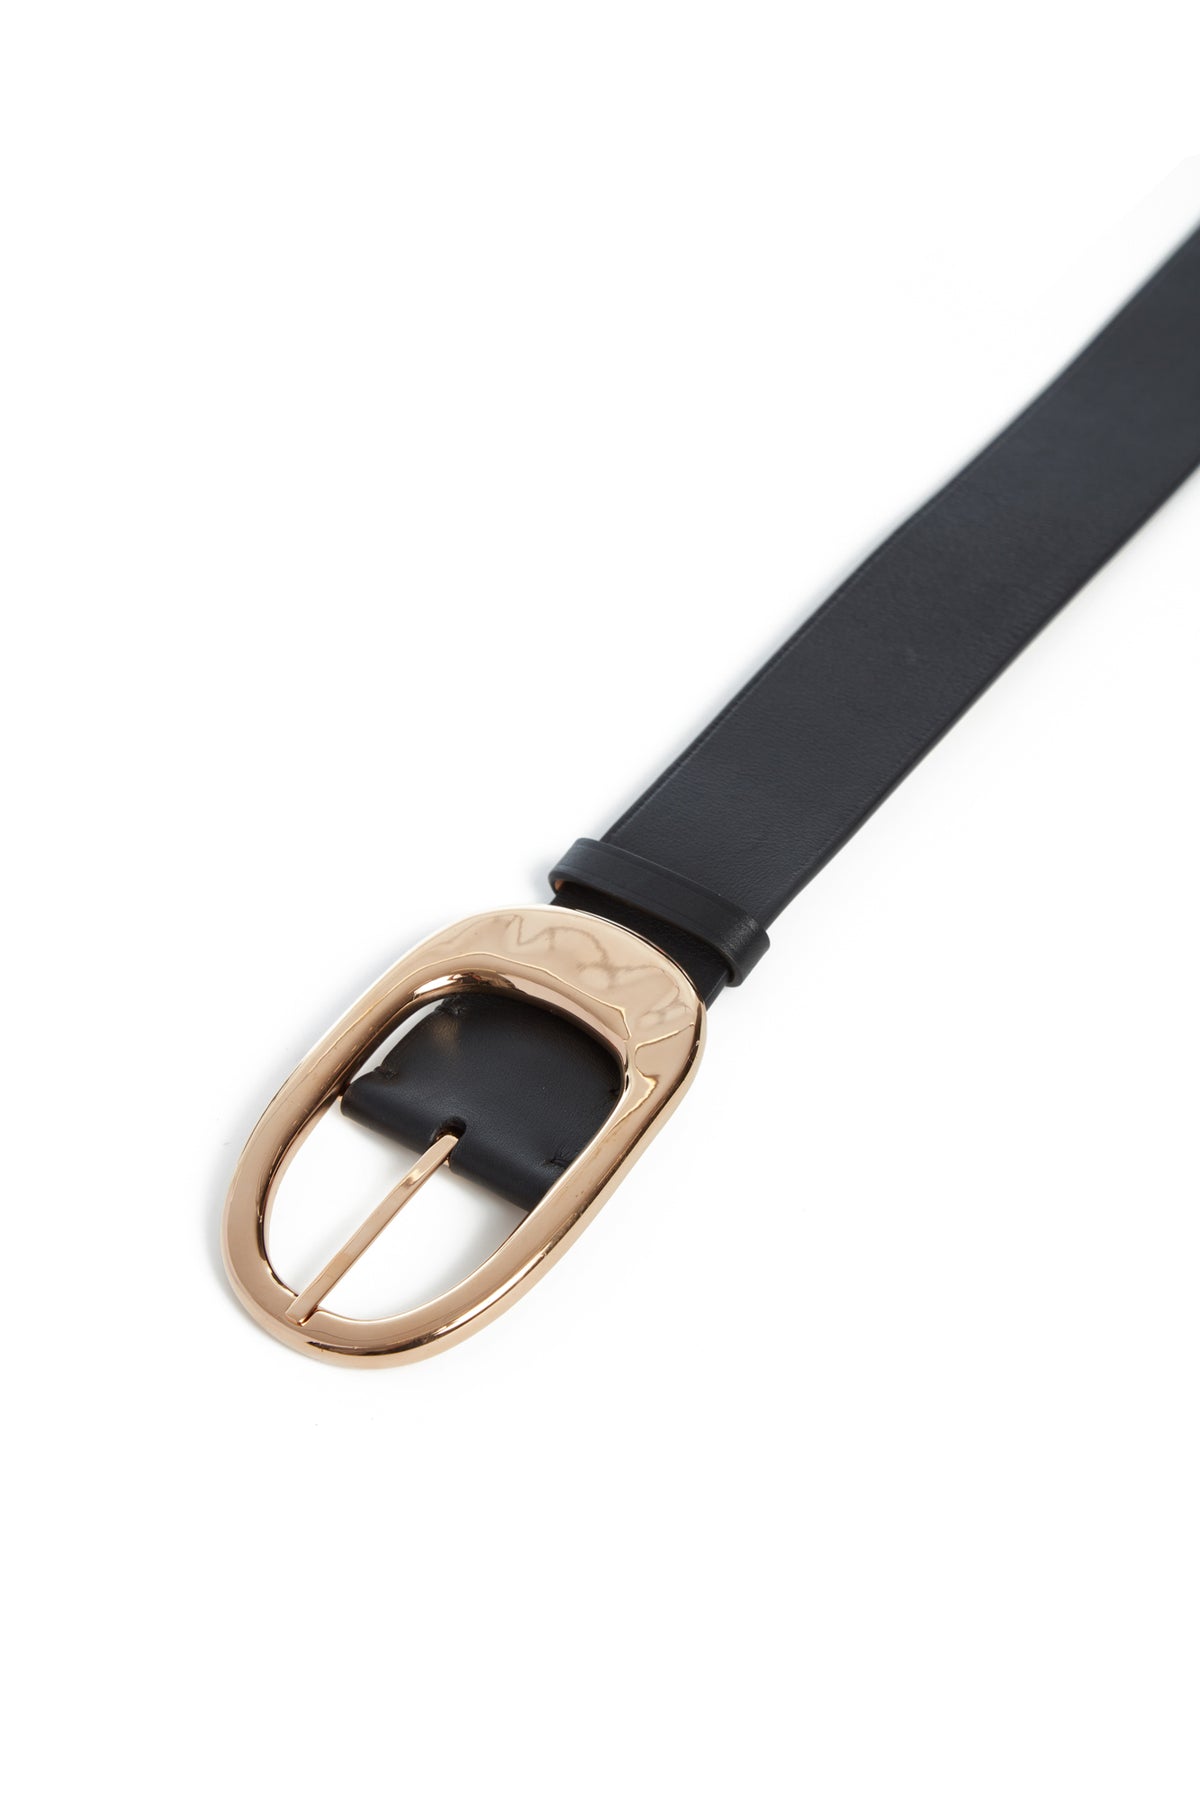 Lozewce Belt in Black Leather